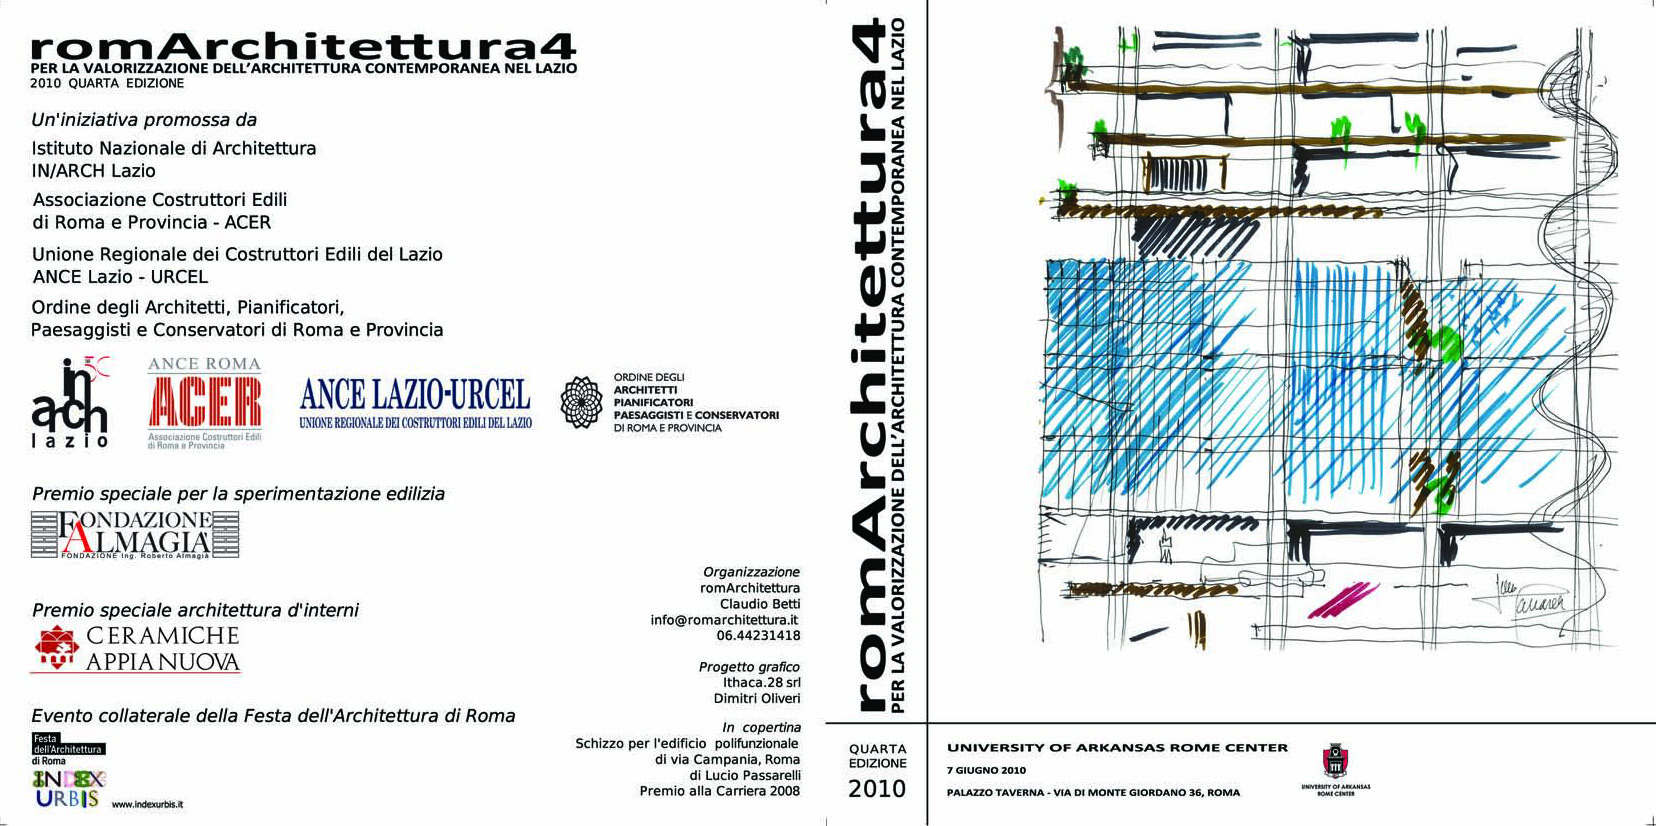 premio20opera20prima_romarchitettura2010_pagina_1.jpg